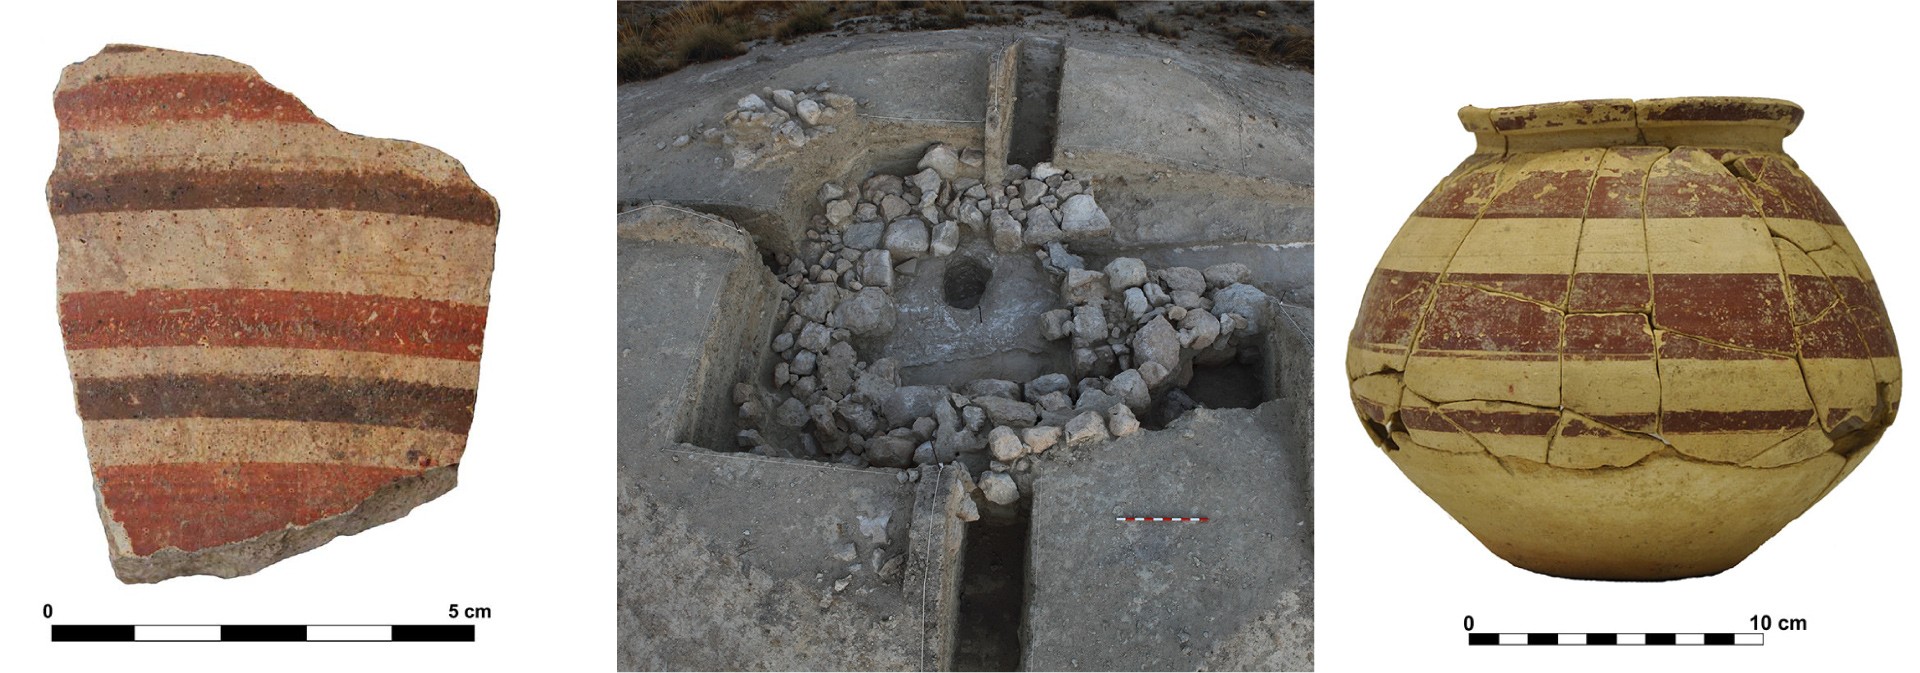 Piezas y yacimiento arqueológico